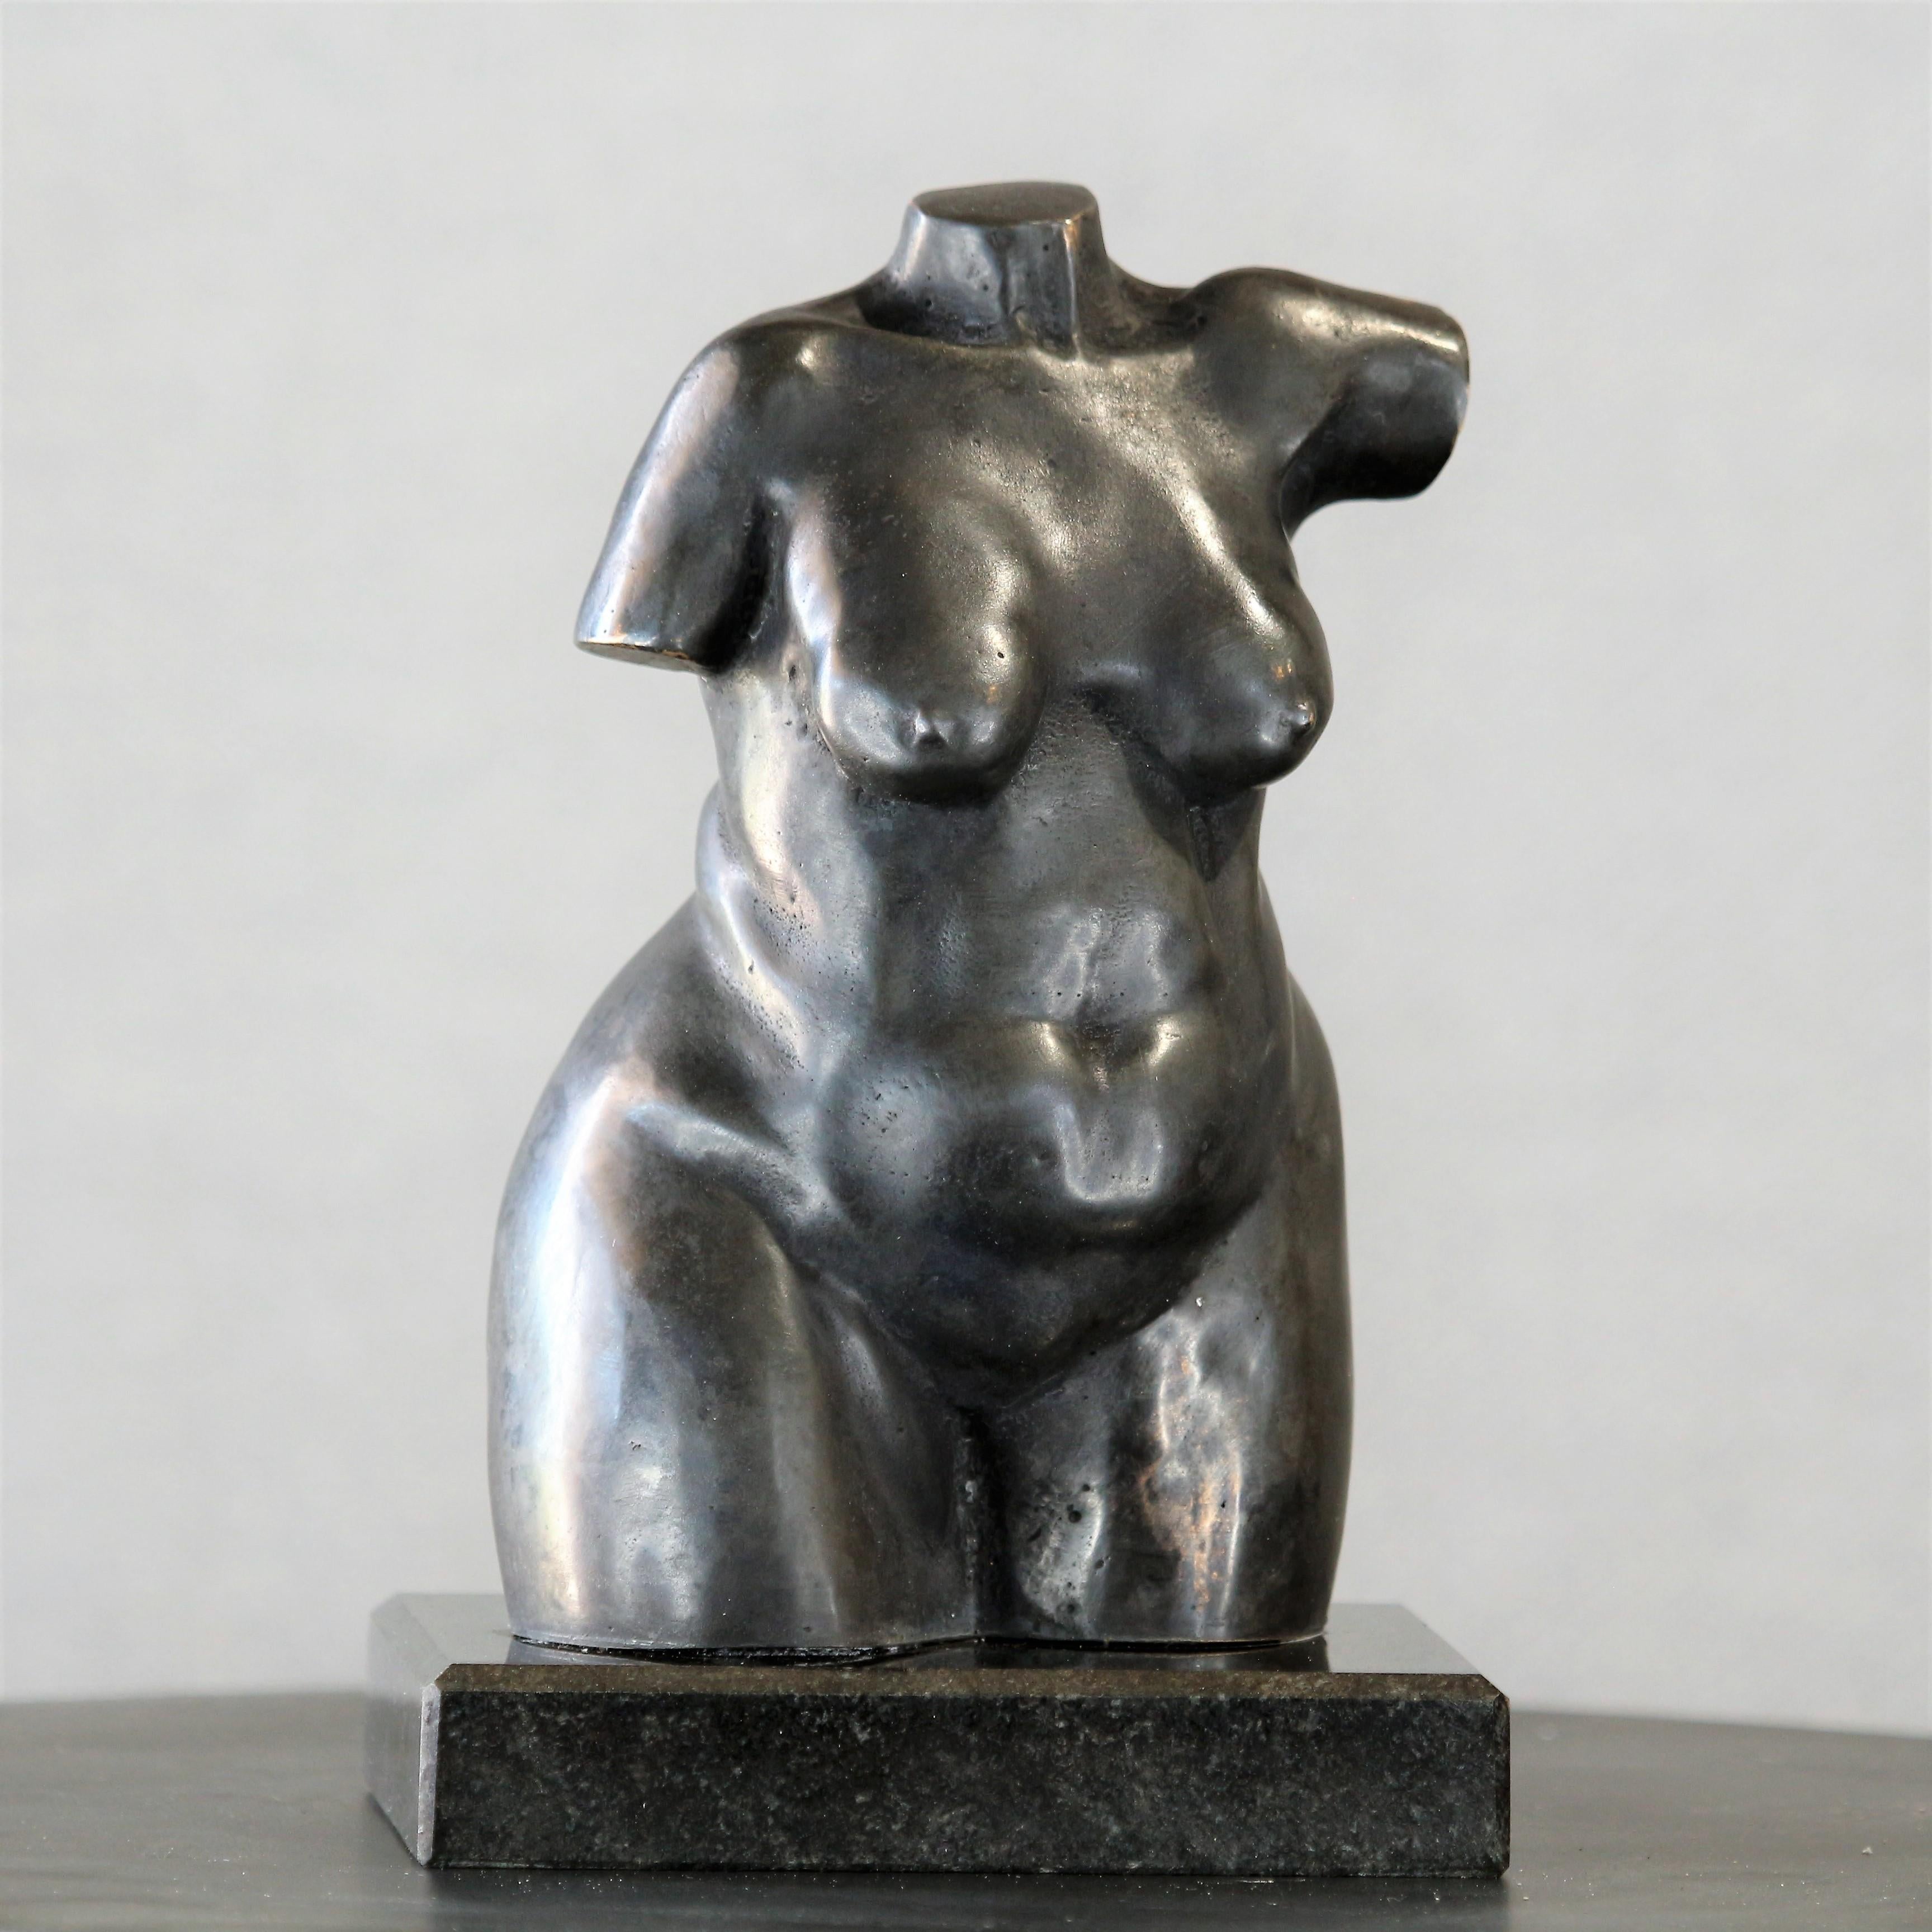 Figurative Sculpture Willem Botha  - Torse de femme féminine - Petite sculpture figurative de femme en bronze patiné brun foncé